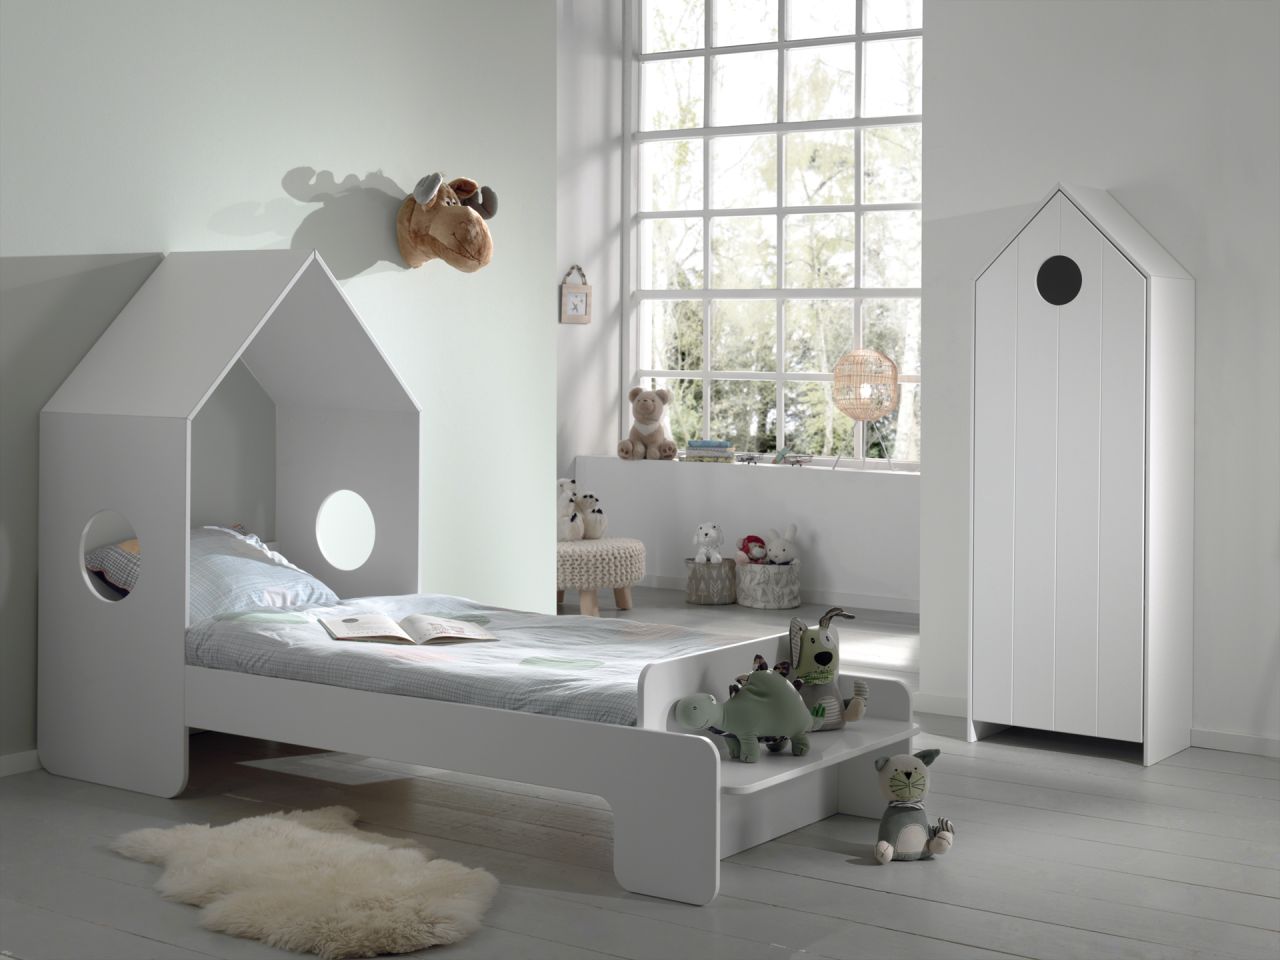 Vipack: Artikelset „CASAMI“ 2- Teilig- Kinderbett Wäscheschrank -Weiß